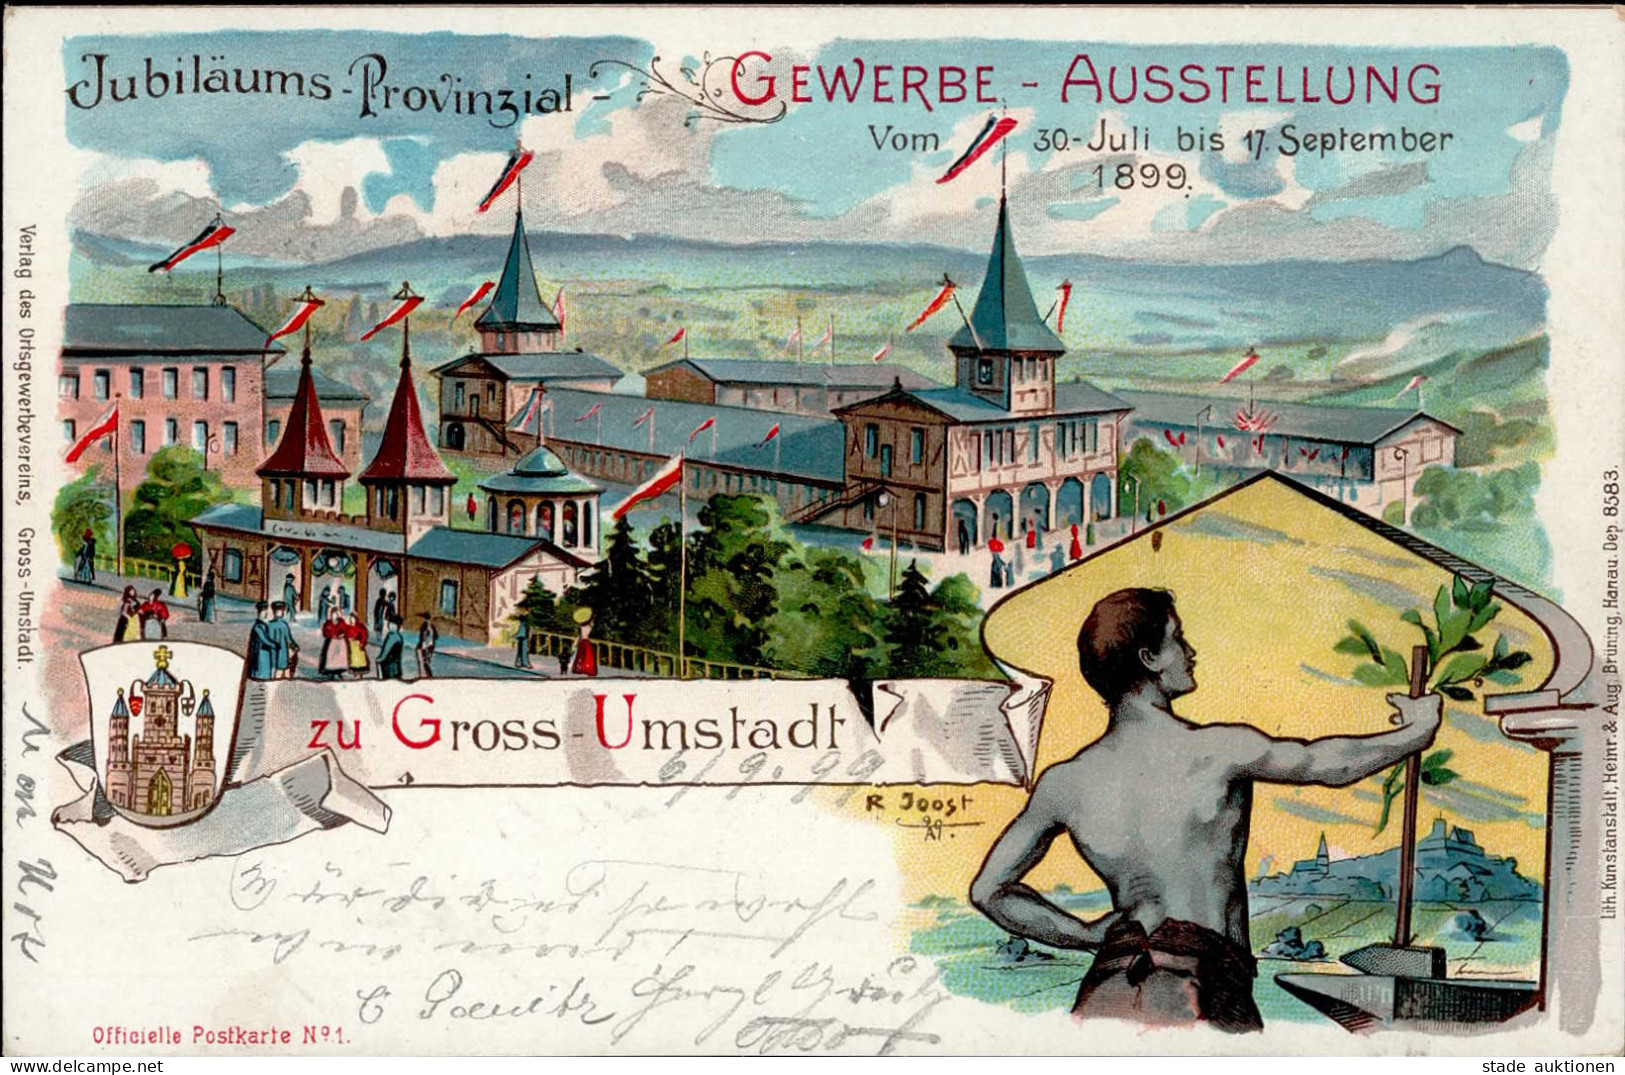 GROSS-UMSTADT - Jubiläums-Provinzial-GEWERBE-AUSSTELLUNG 1899 Künstlerlitho Sign. R.Joost I - Expositions